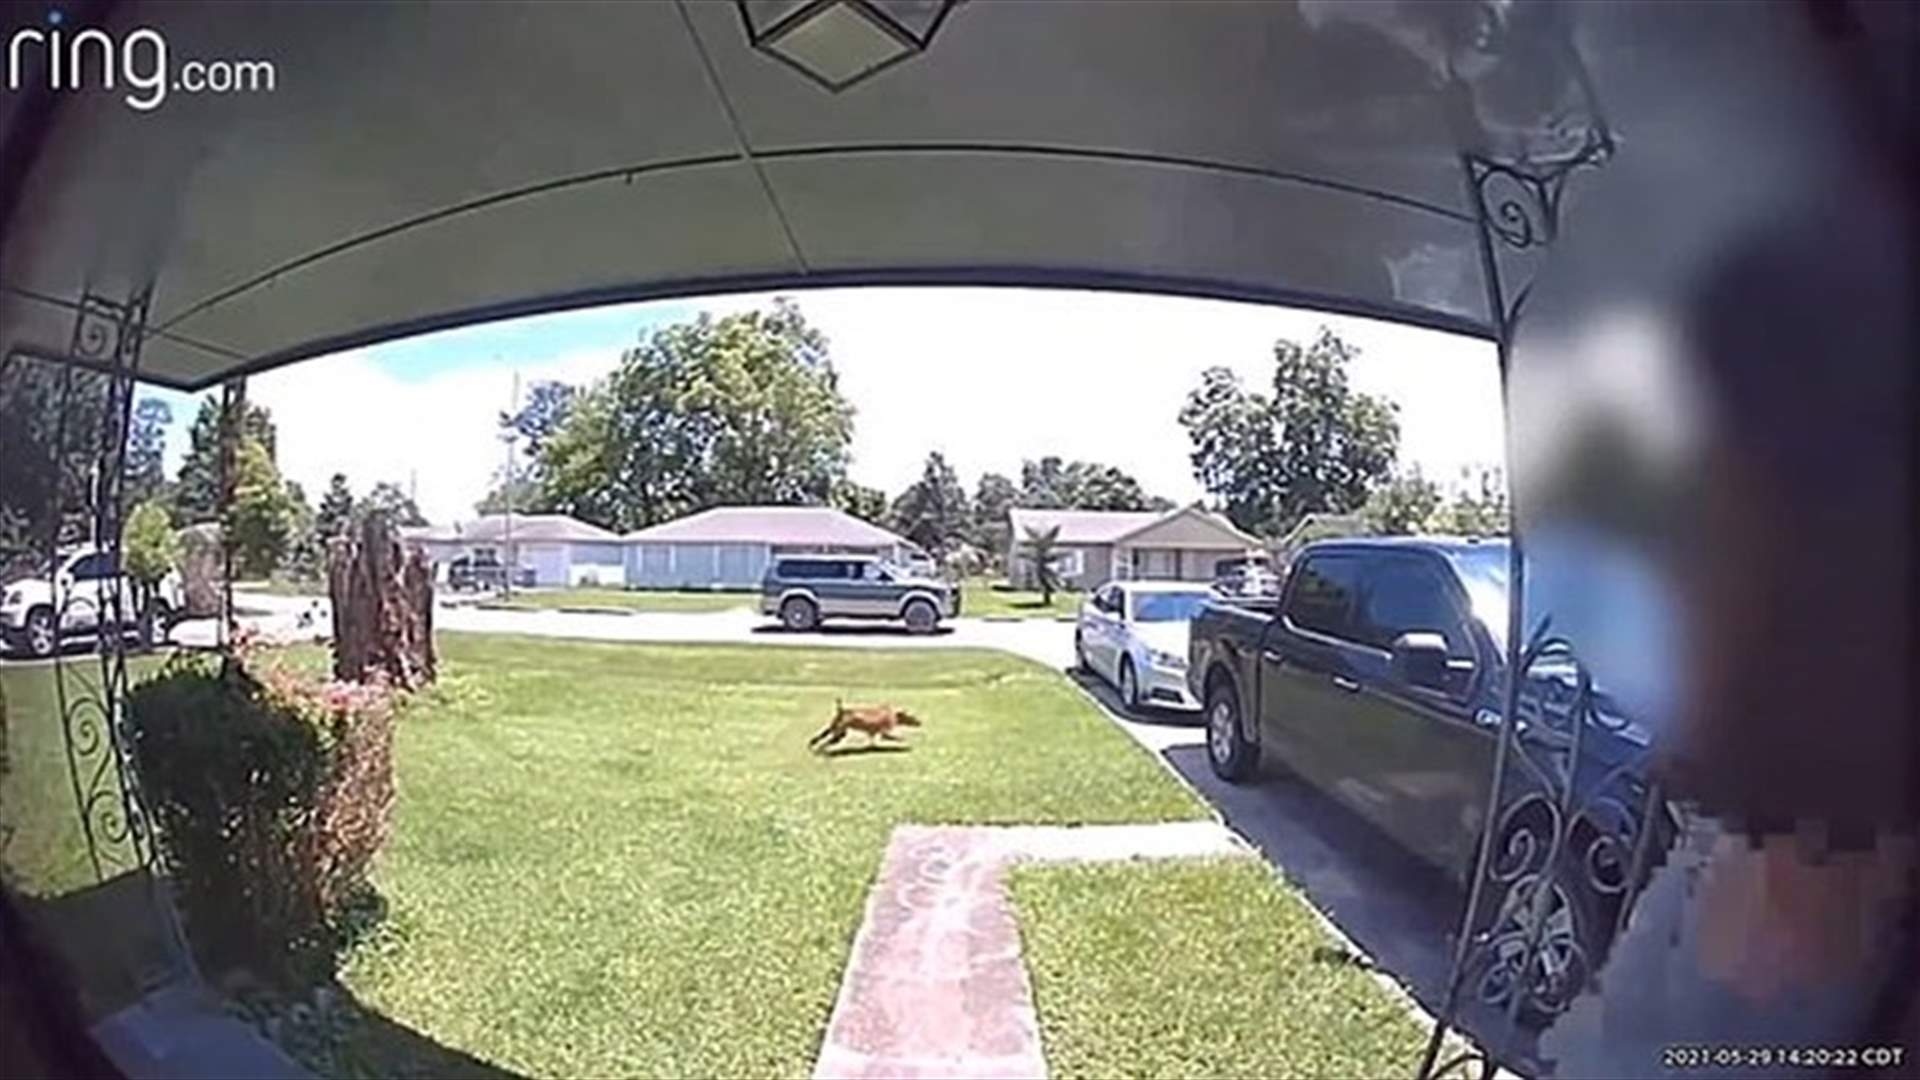 أرادت إطلاق النار على كلب جارها... فأصابت ابنها في بطنه! (فيديو)